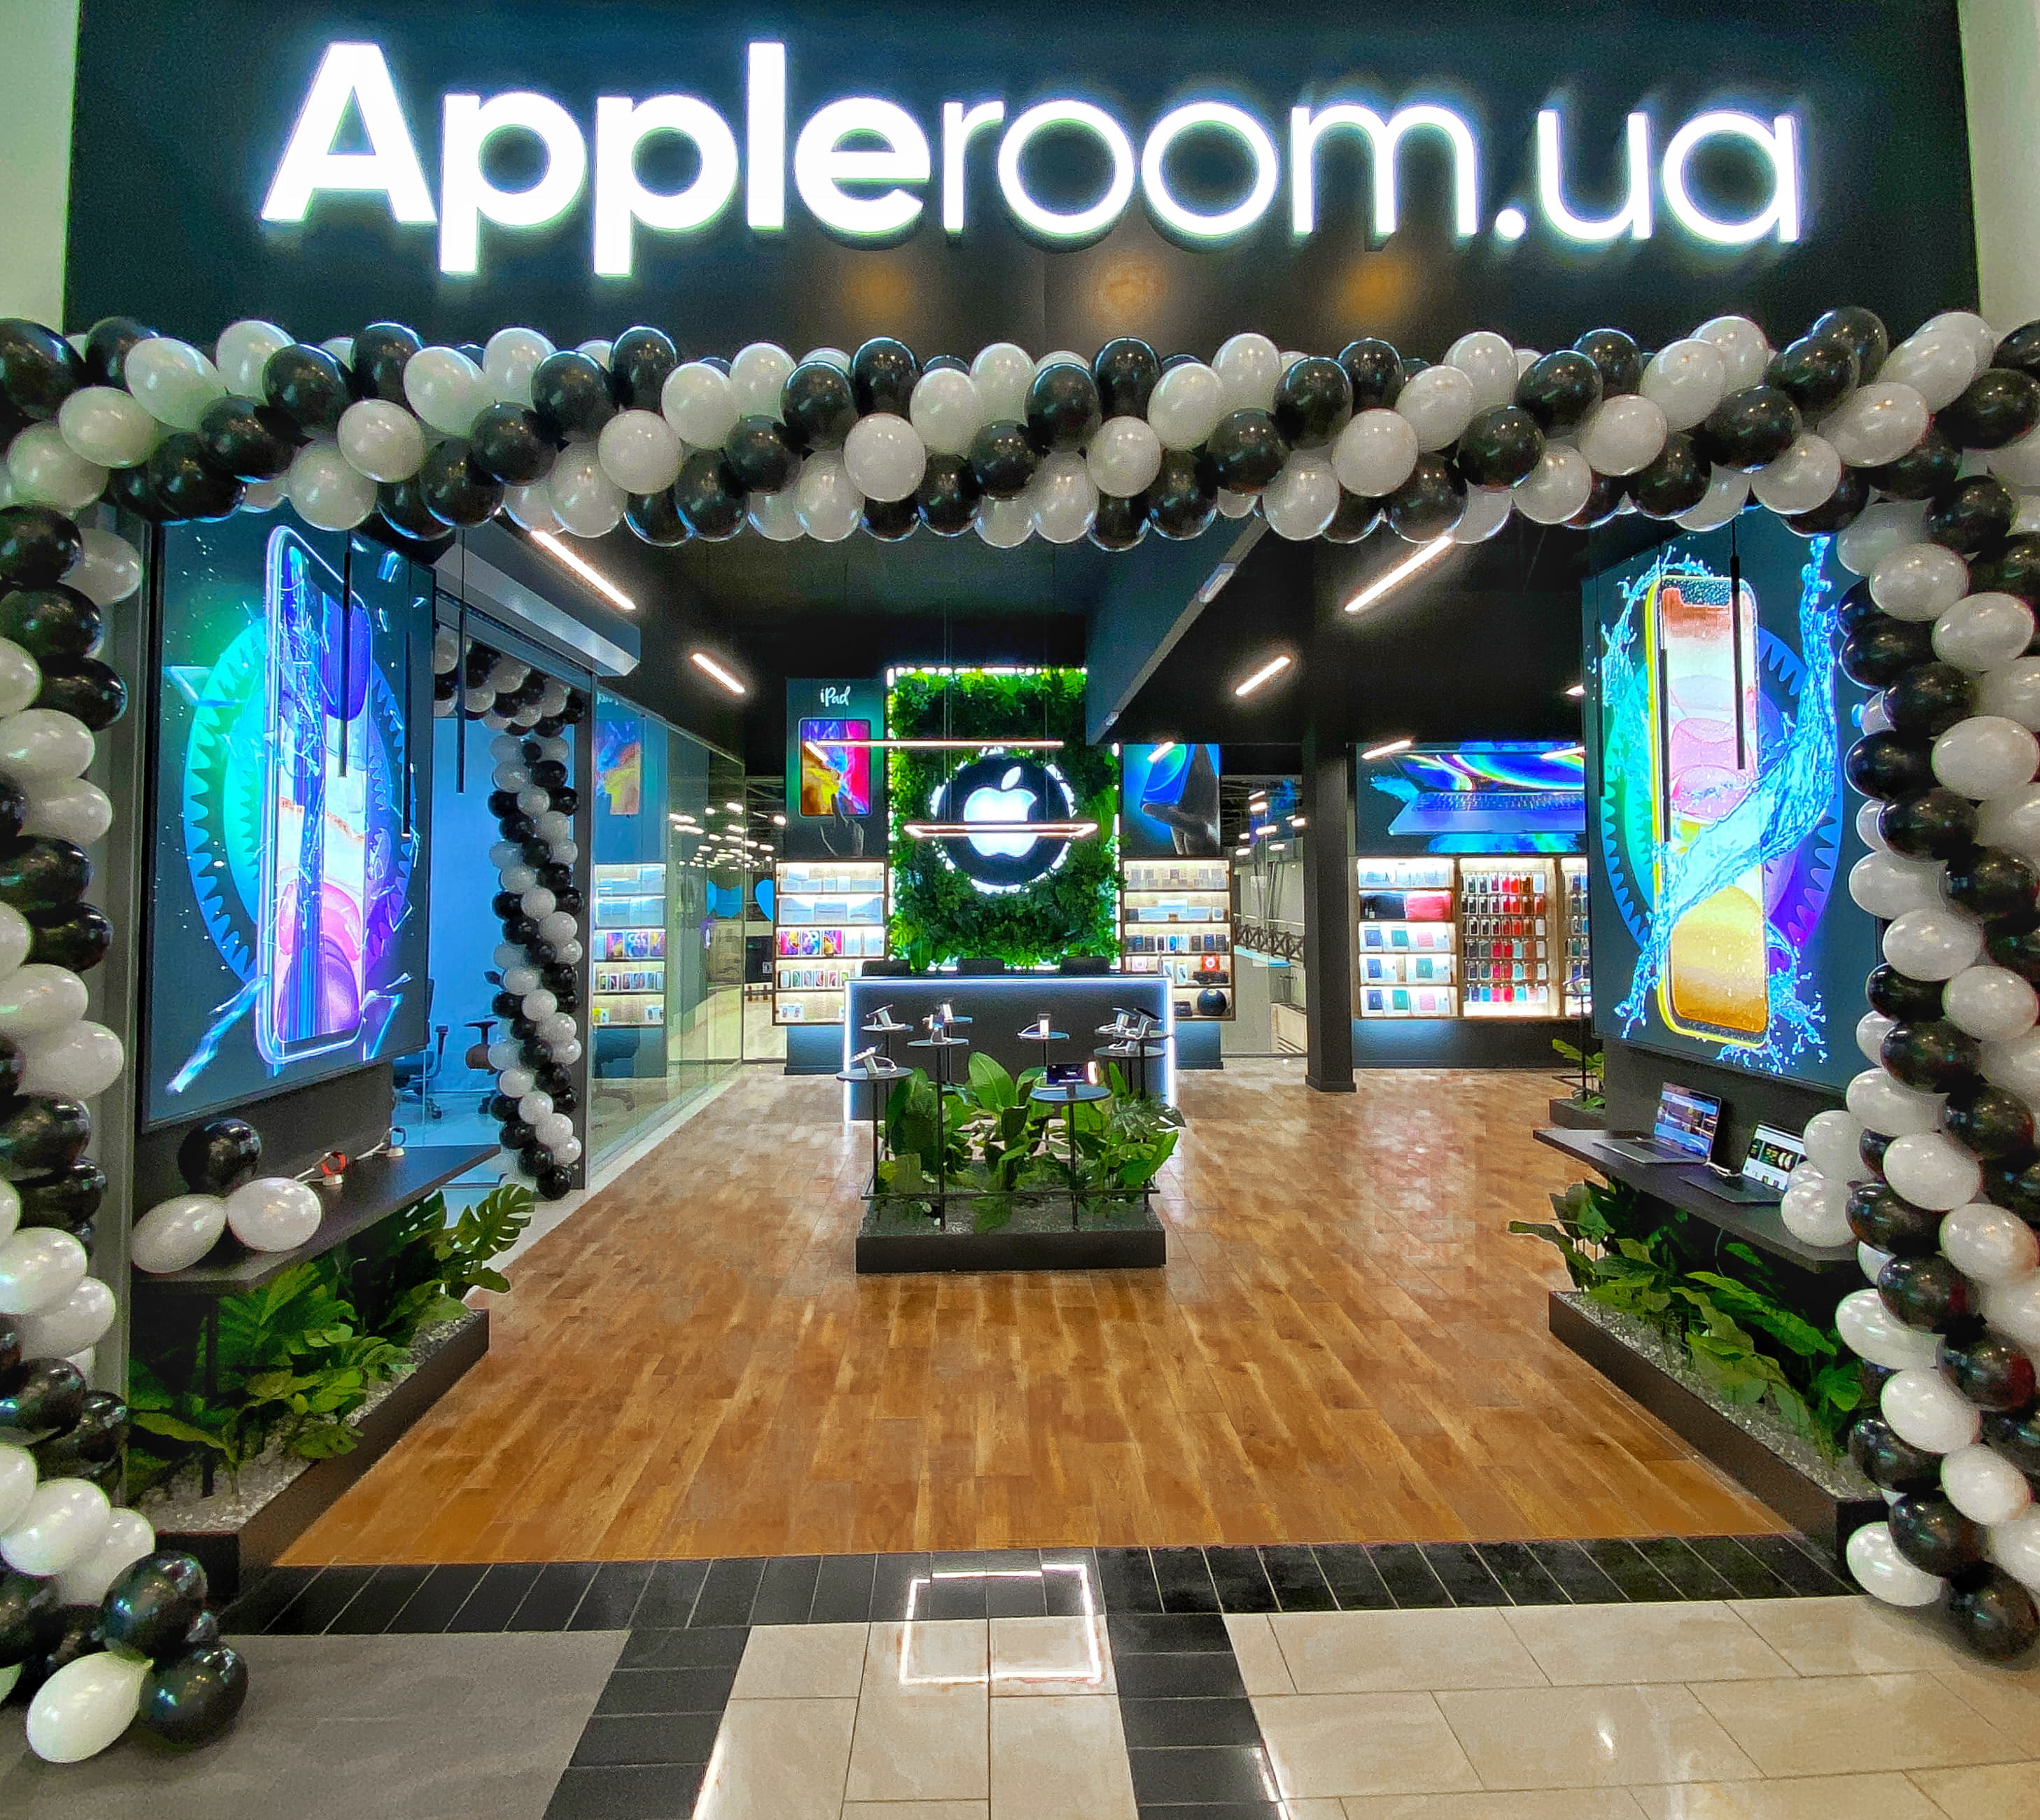 Apple Room святкує відкриття нових магазинів!